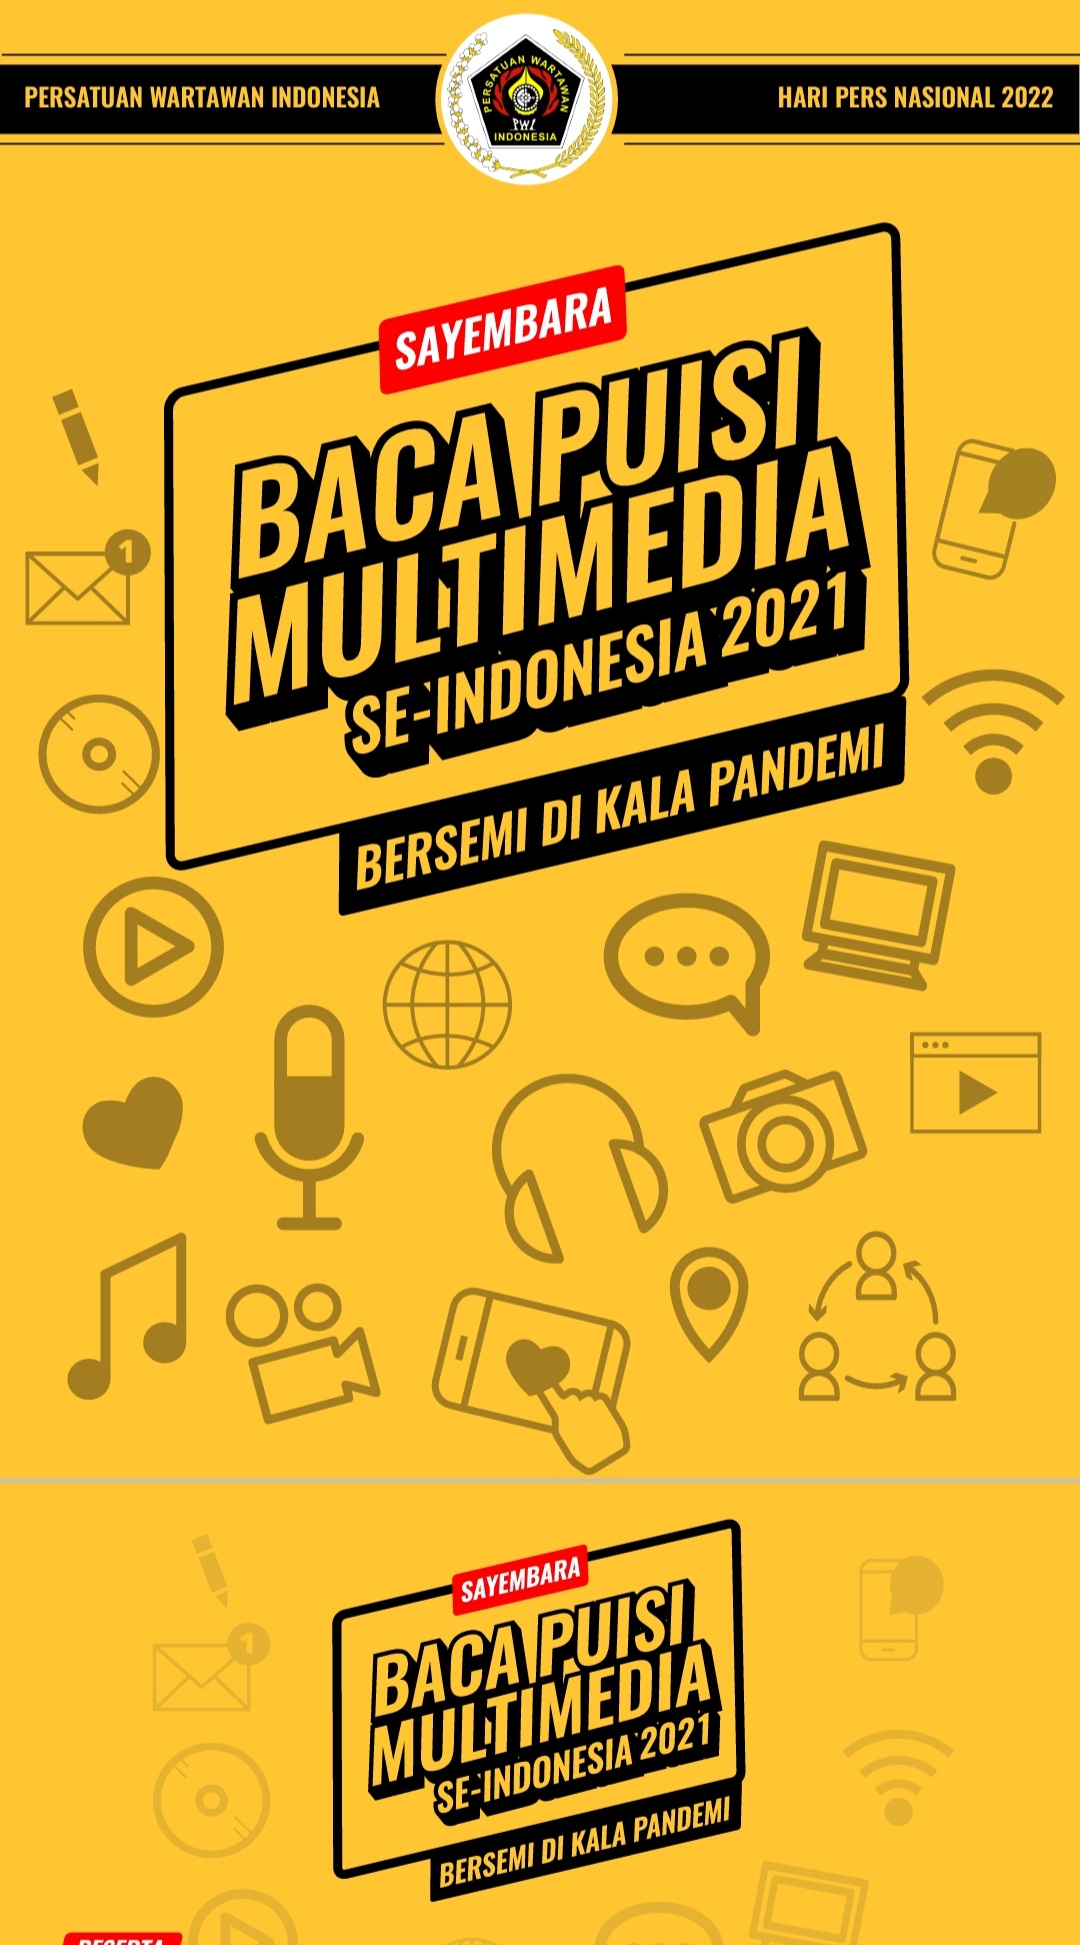 PWI Pusat Gelar Sayembara Baca Puisi Multimedia, Berhadiah Puluhan Juta Rupiah